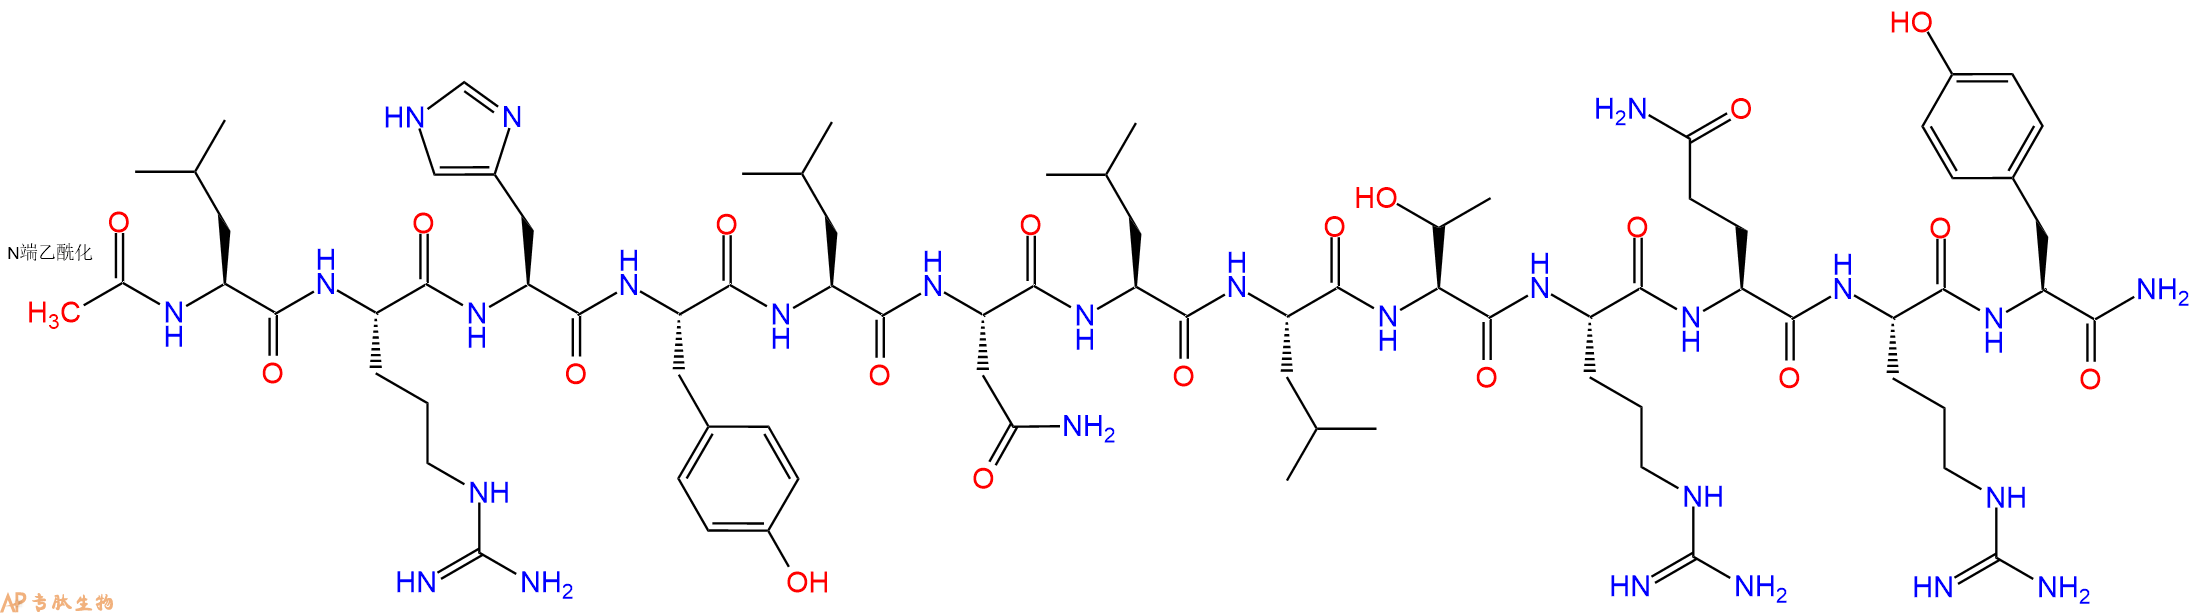 多肽生物产品Ac-[Leu28, 31]Neuro Peptide Y(24-36), human155709-24-3